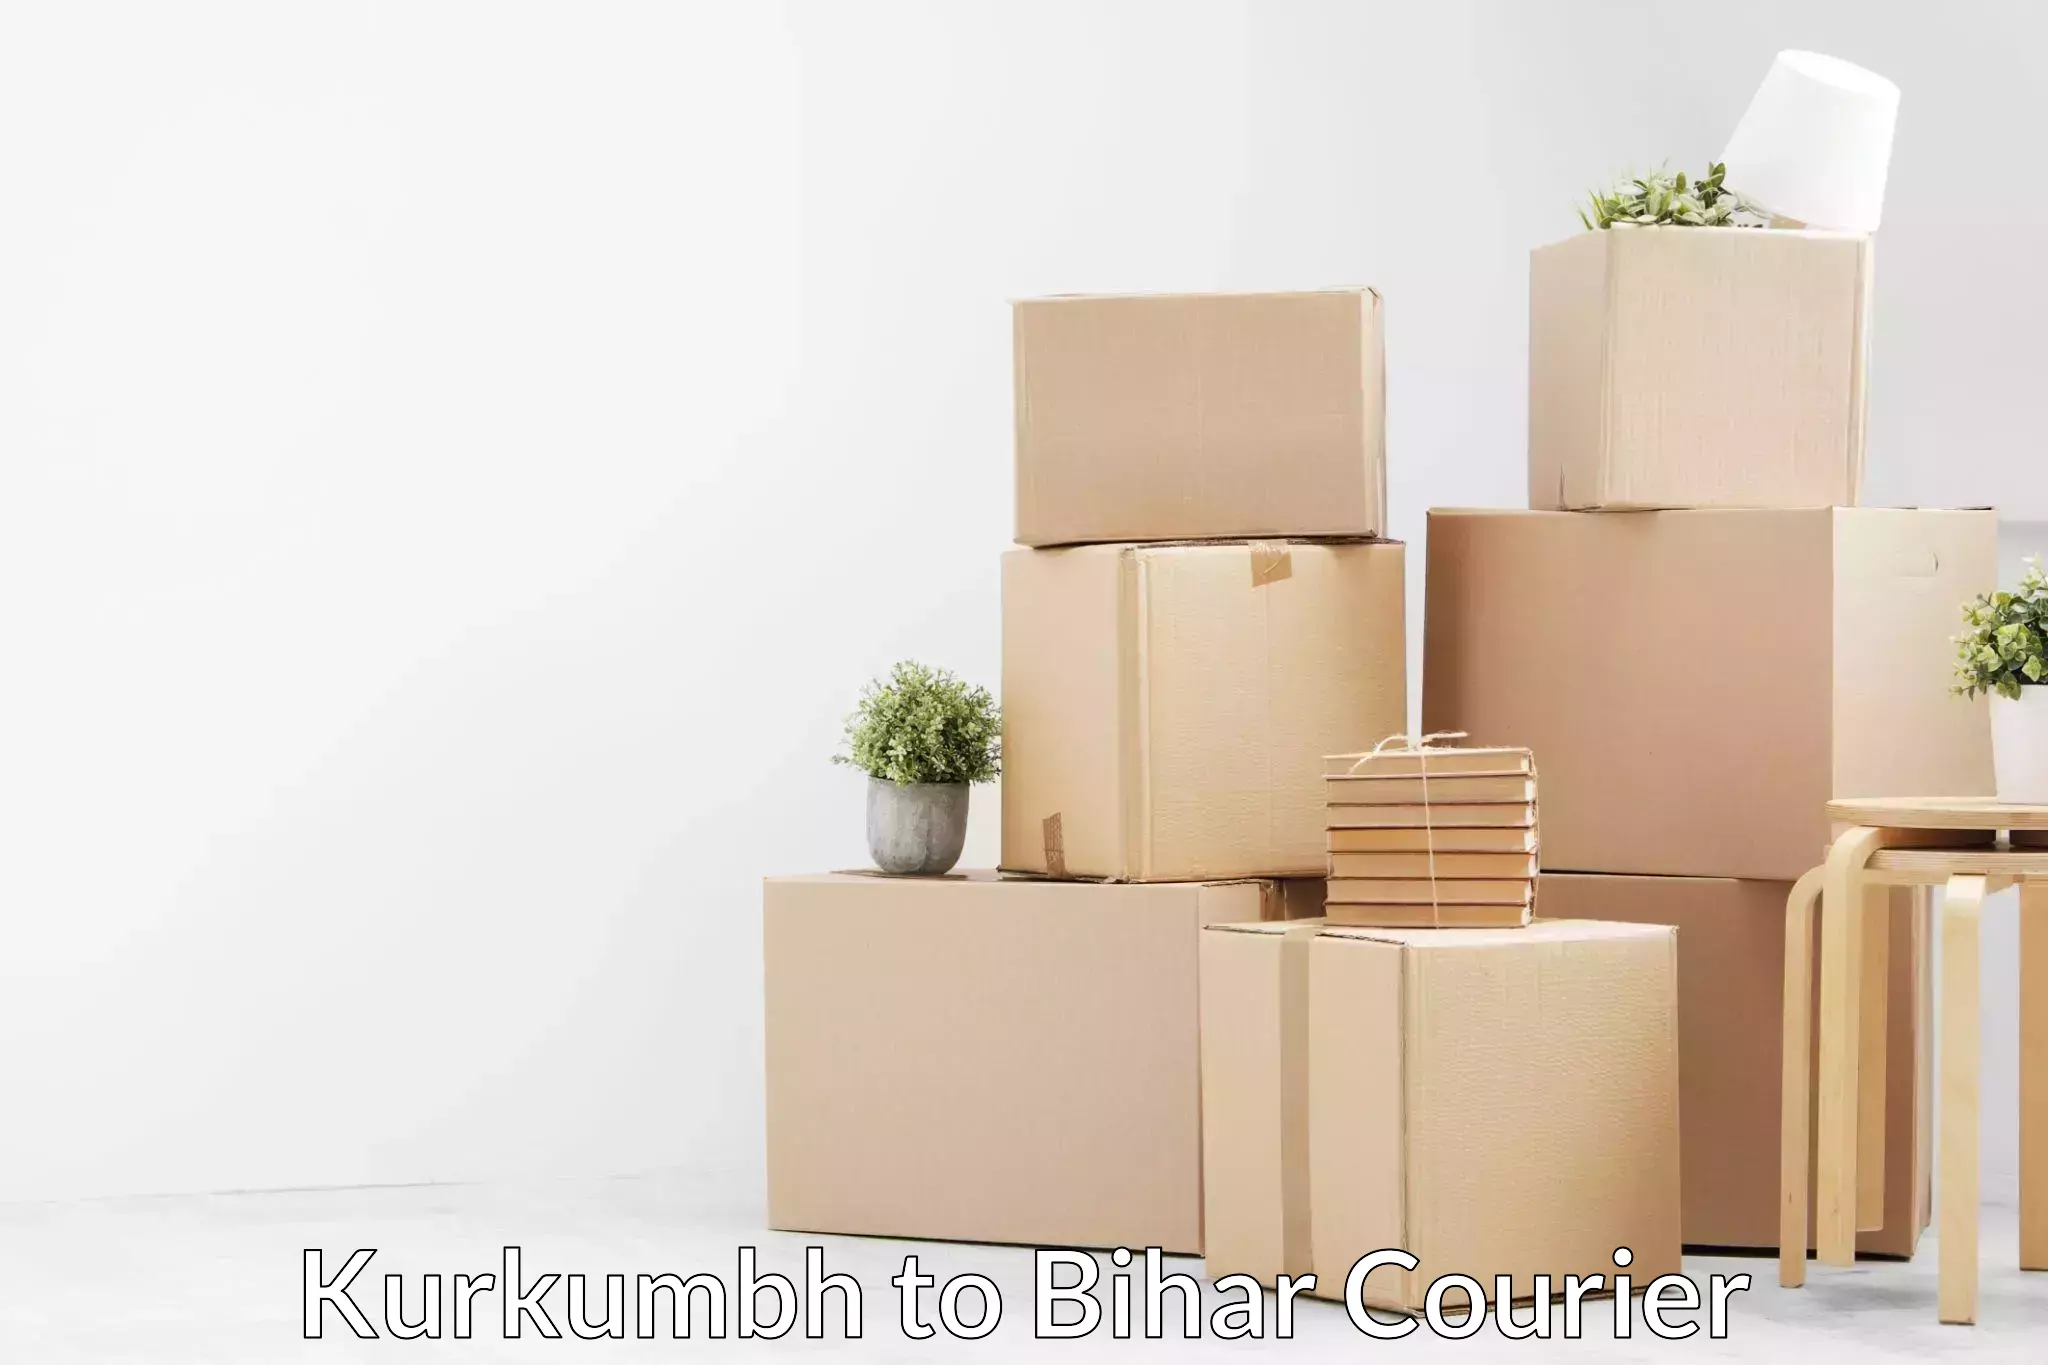 Professional movers and packers Kurkumbh to Bihar